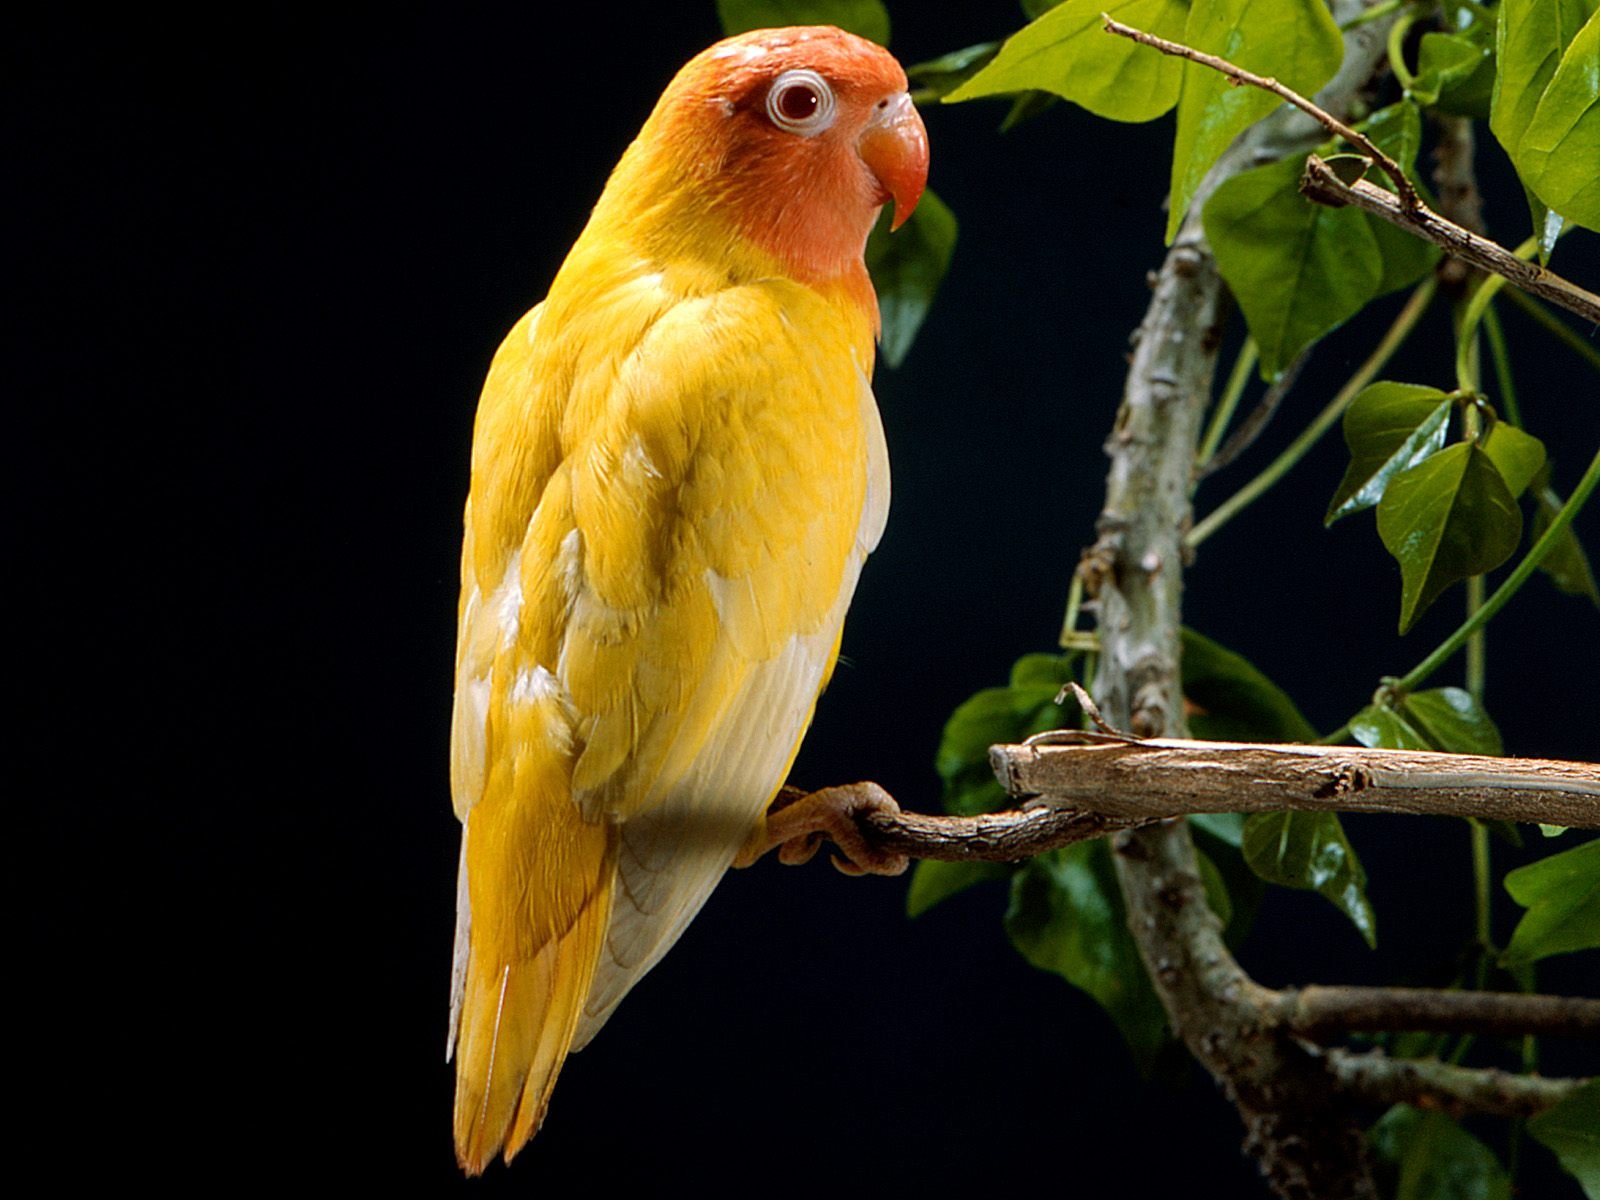 Yellow Parrot8040717557 - Yellow Parrot - yellow, Parrot, Cuddles